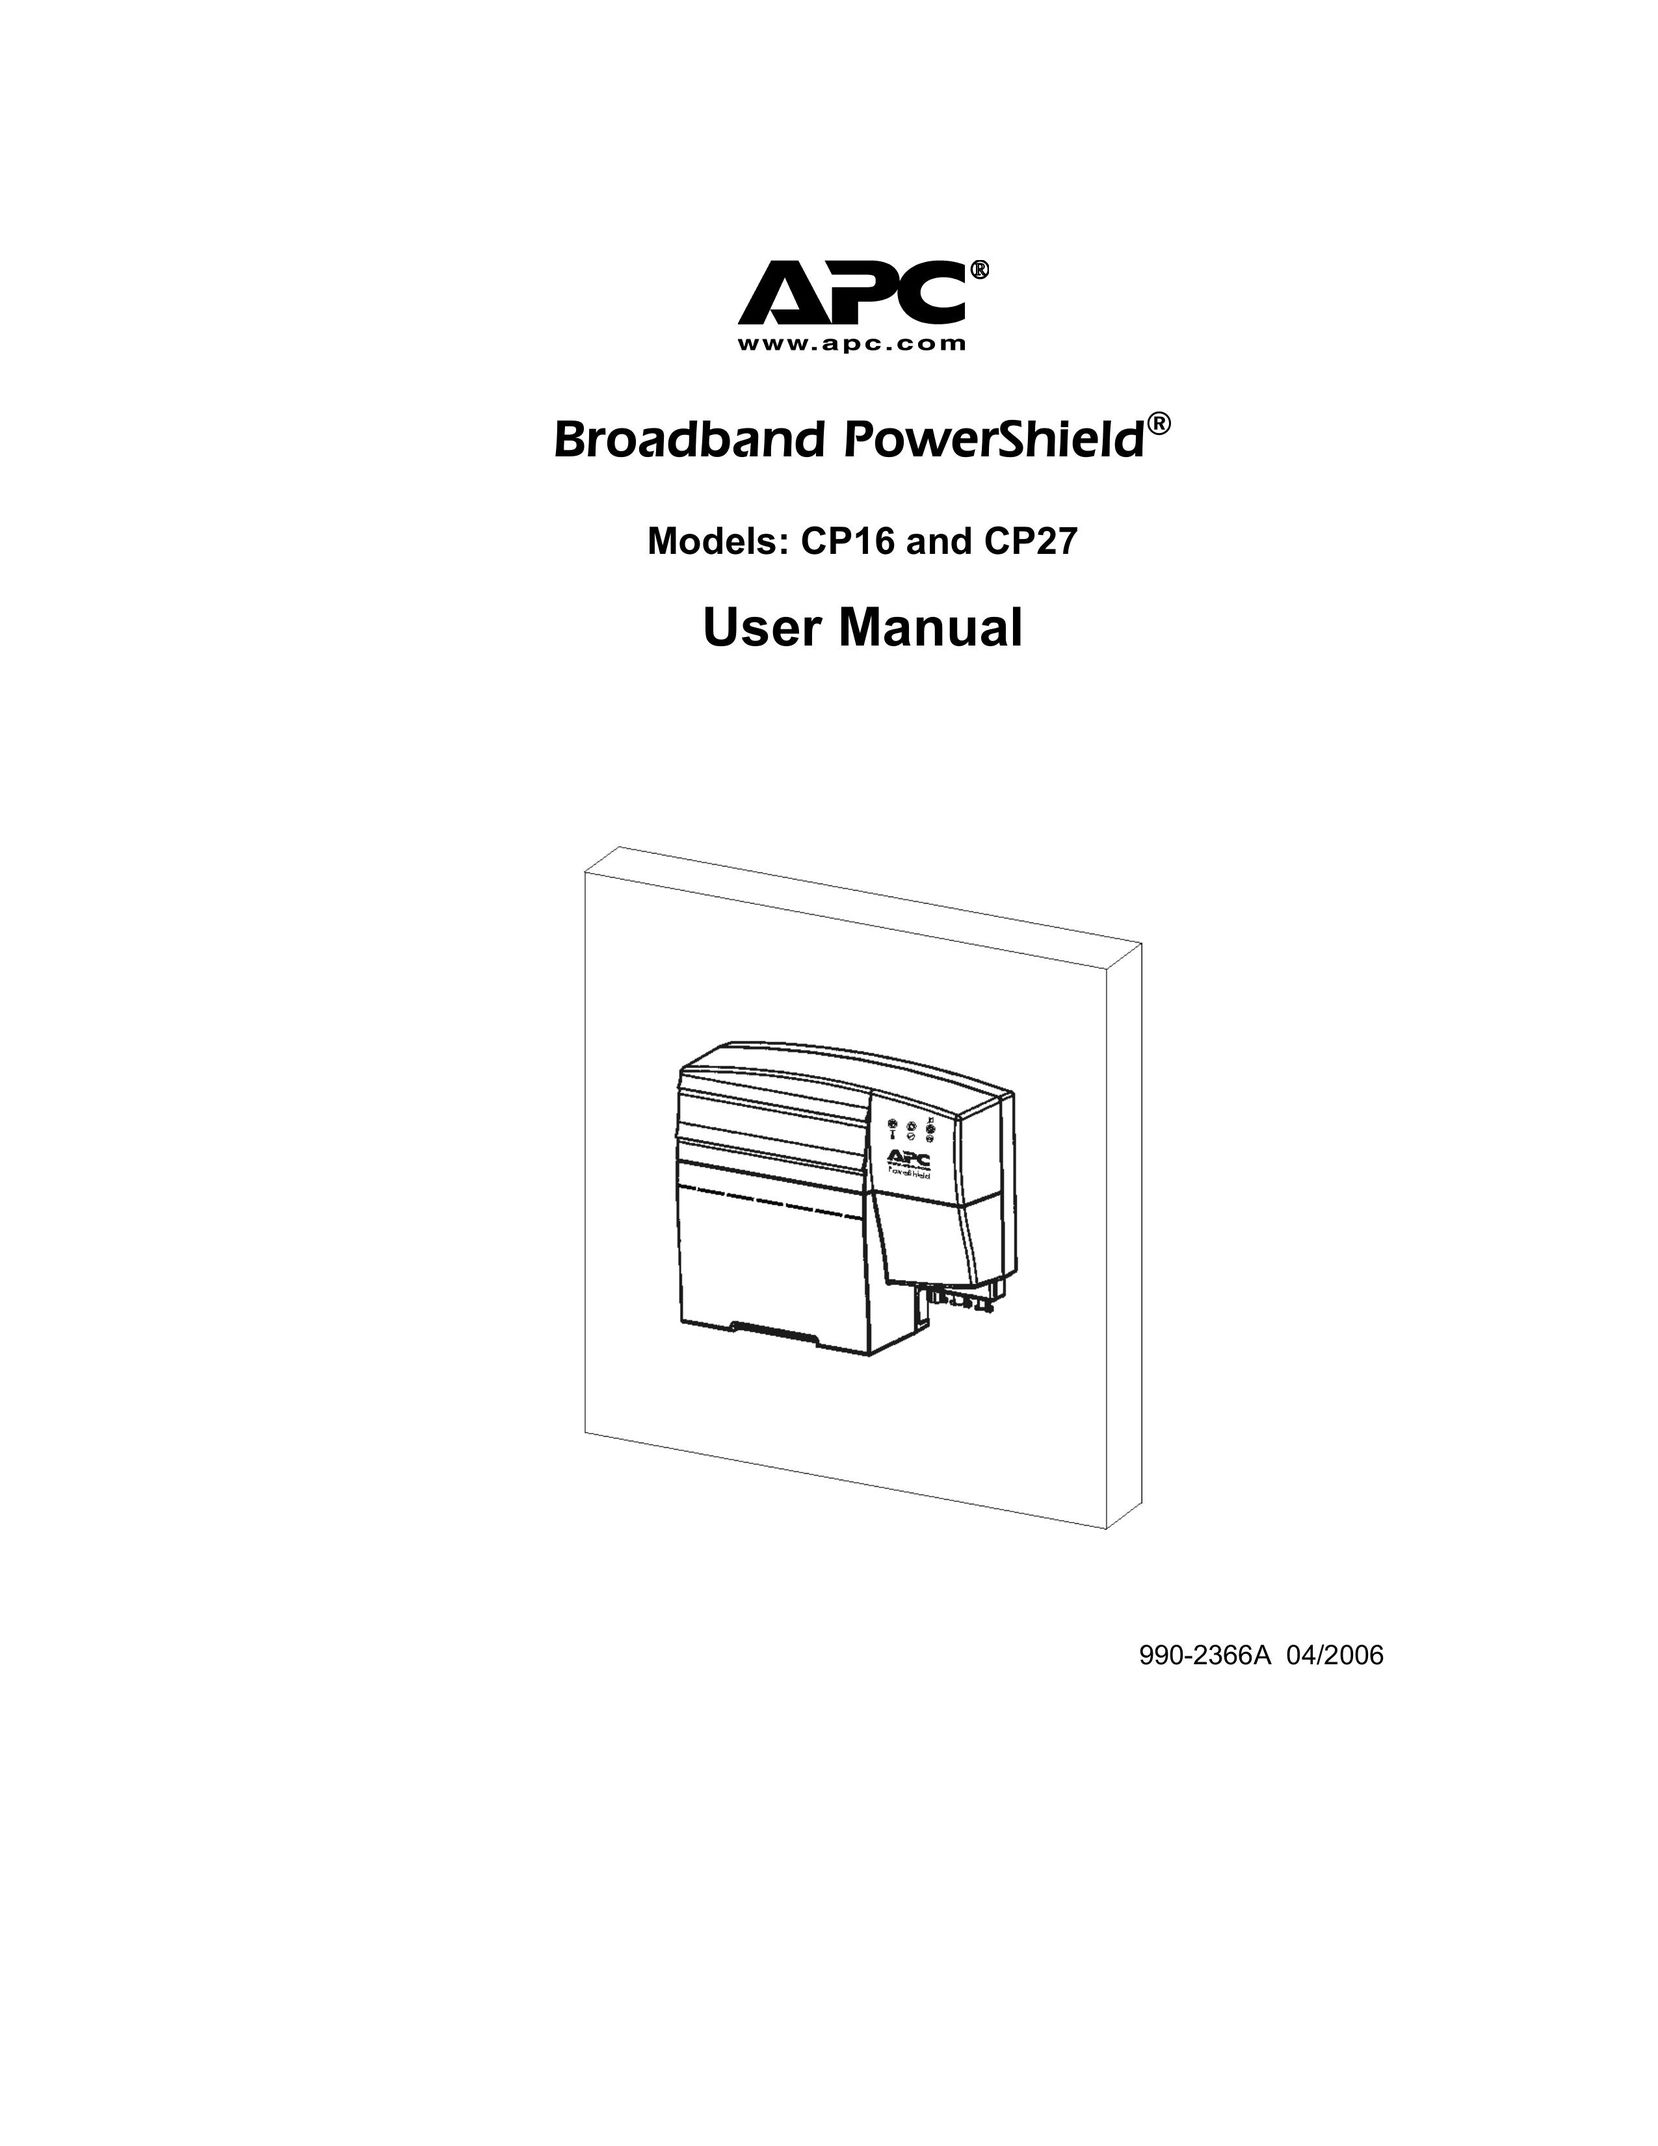 APC CP27 IP Phone User Manual